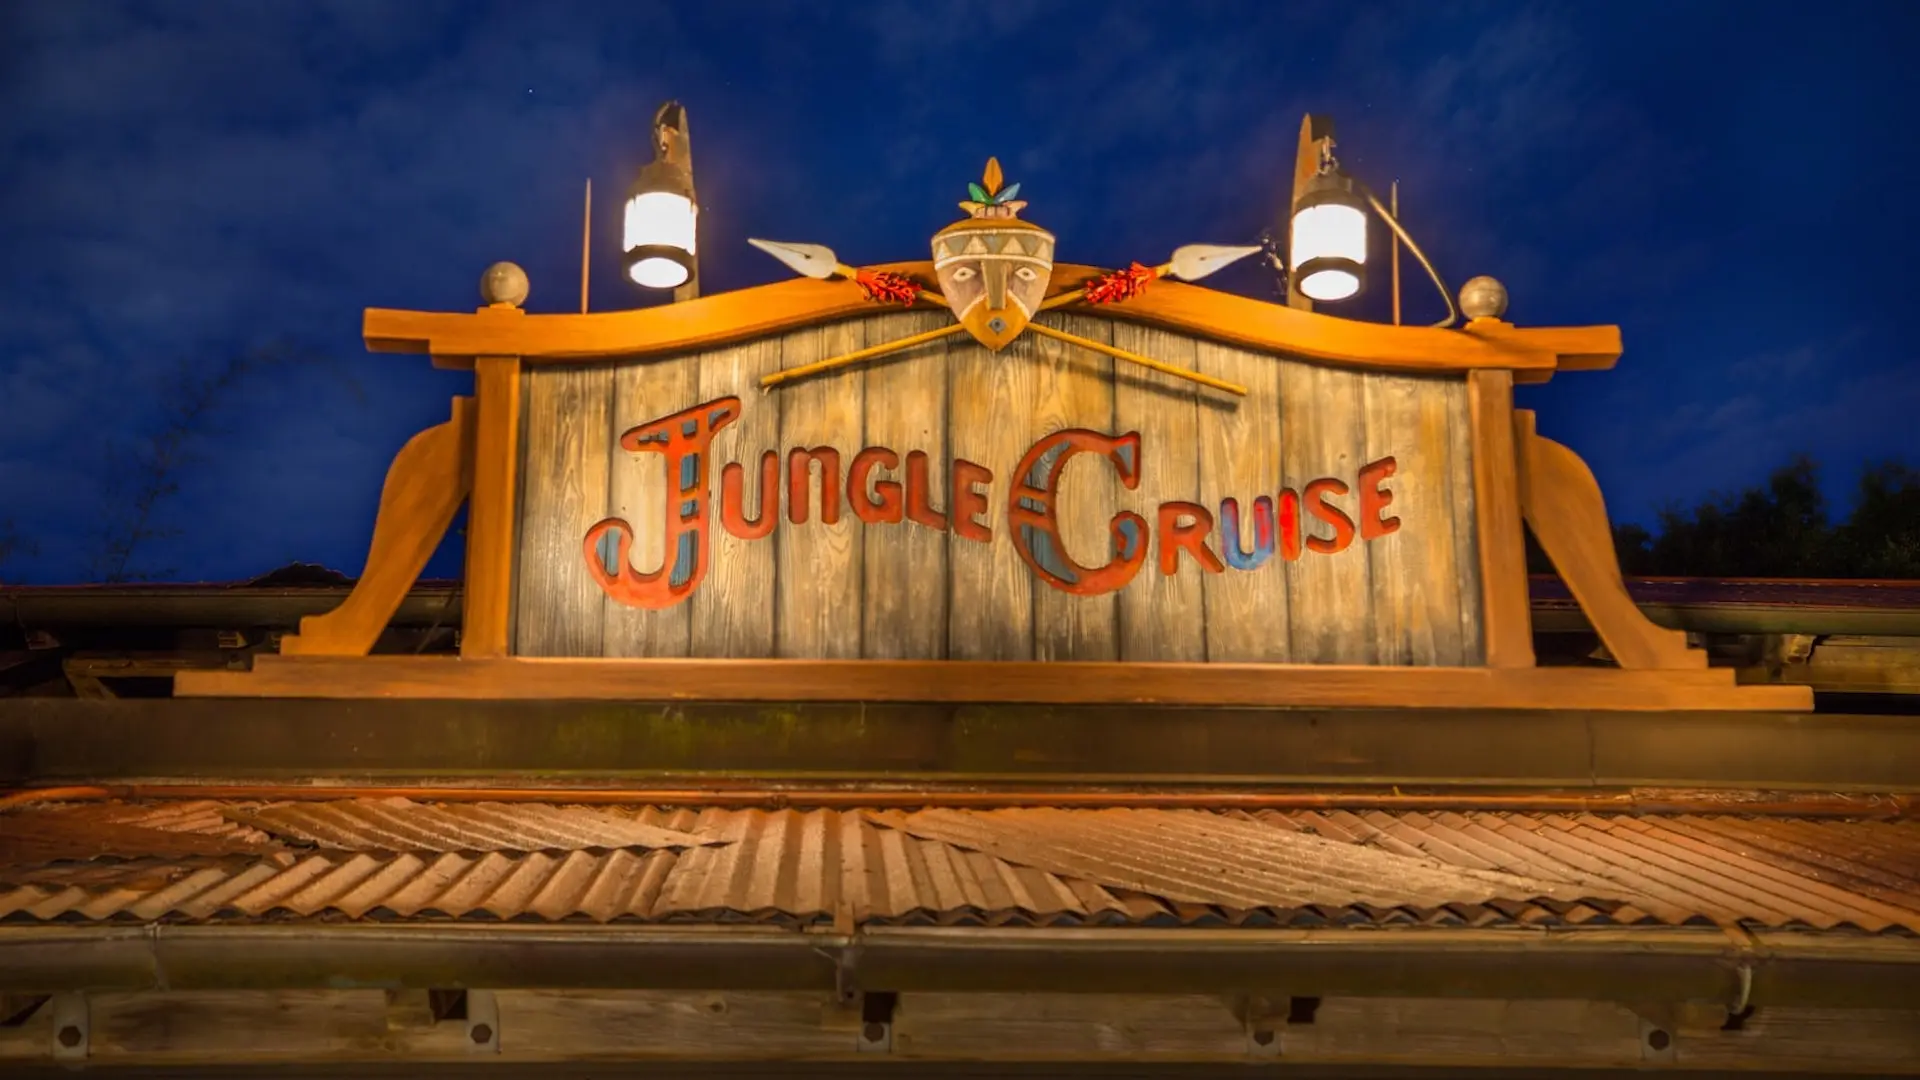 Cómo es Jungle Cruise el parque de Disney que inspiró la película: video